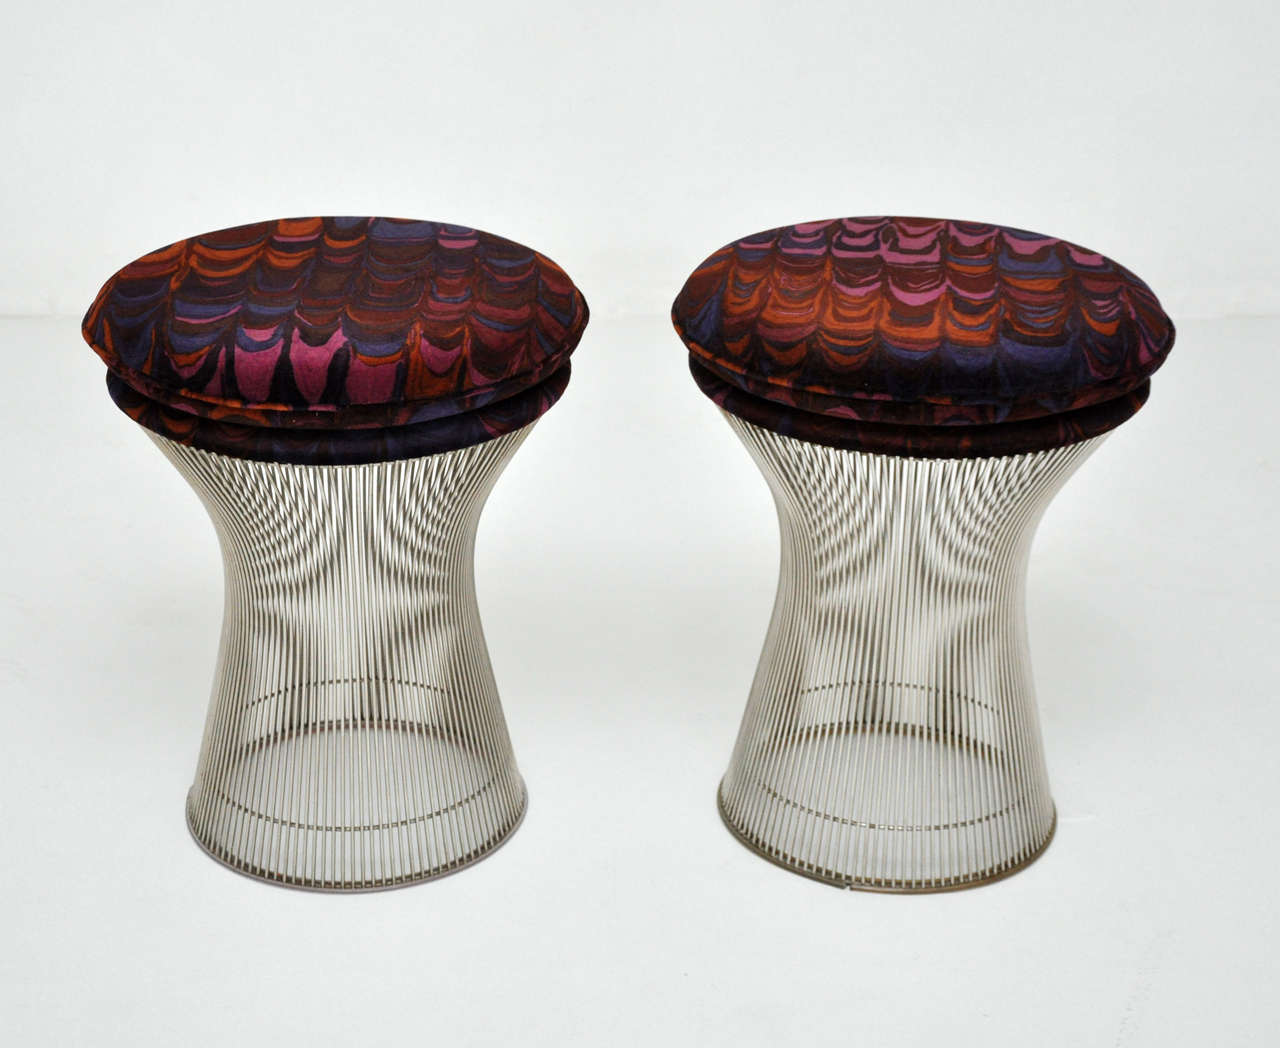 Pair of nickel finish stools by Warren Platner for Knoll. Newly upholstered in vintage Jack Lenor Larsen velvet.